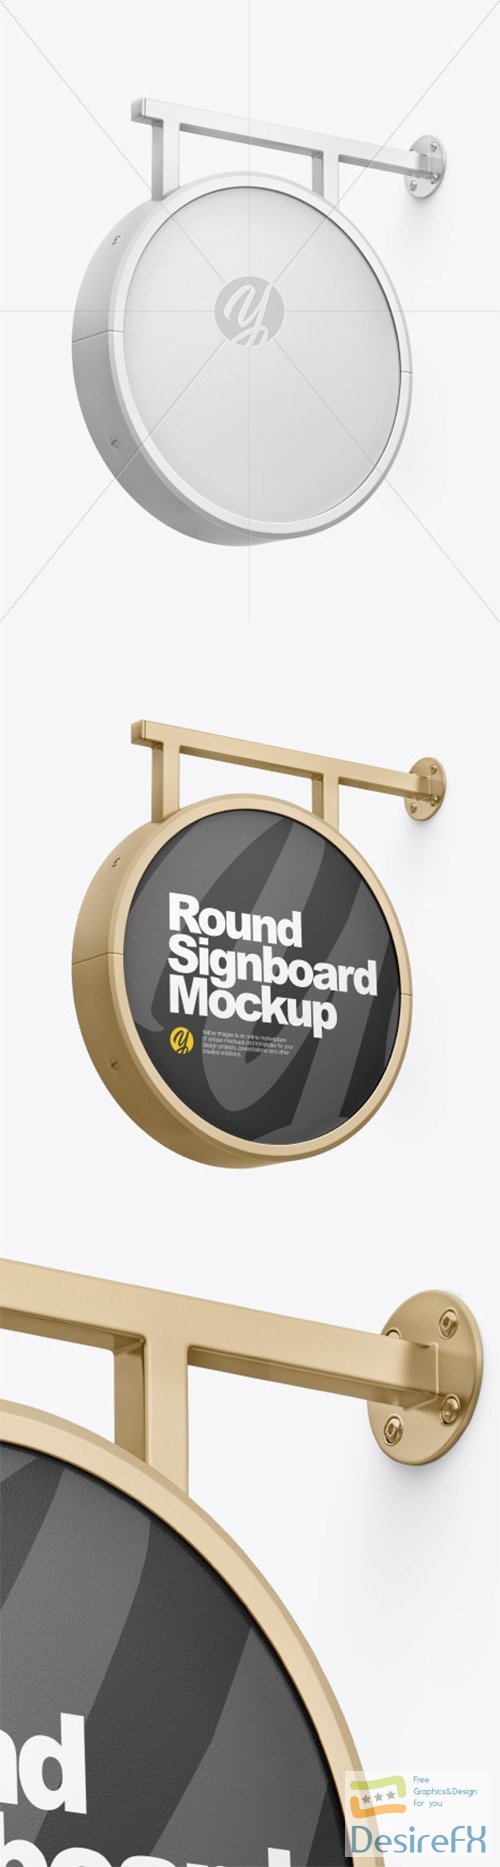 Metallic Round Signboard Mockup 80003 TIF